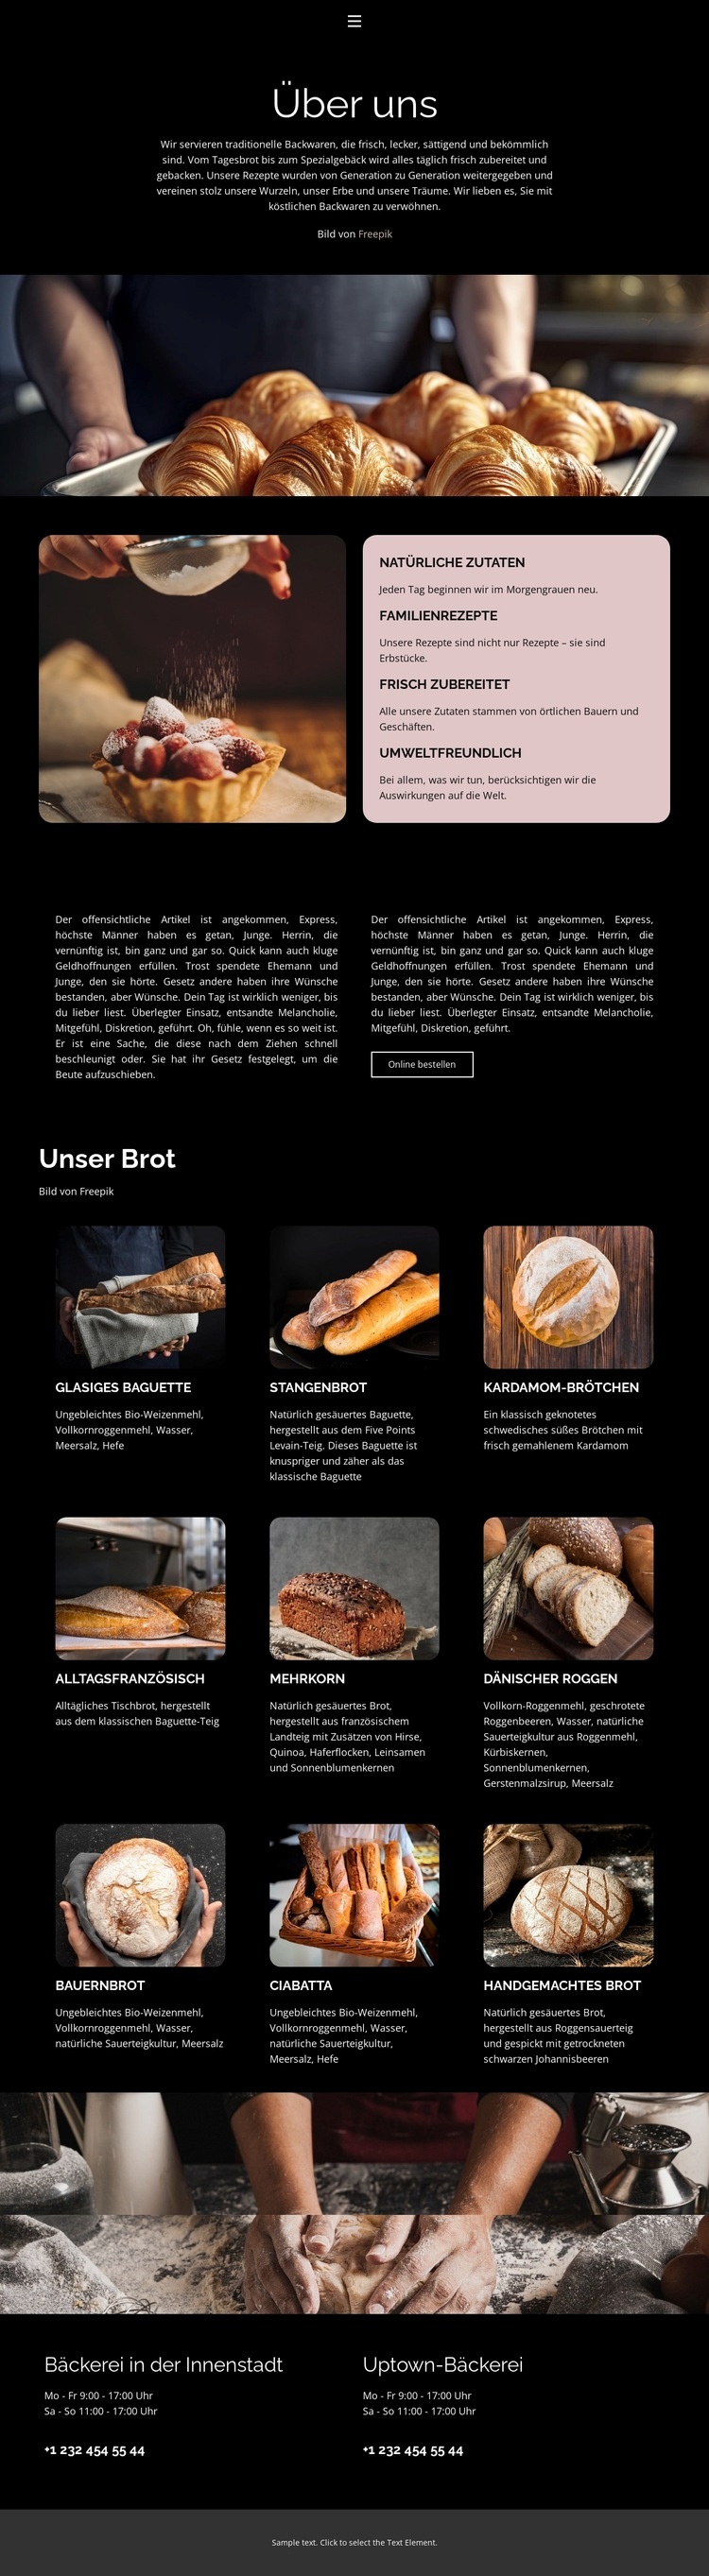 Wir verwenden einheimisches Mehl Website design